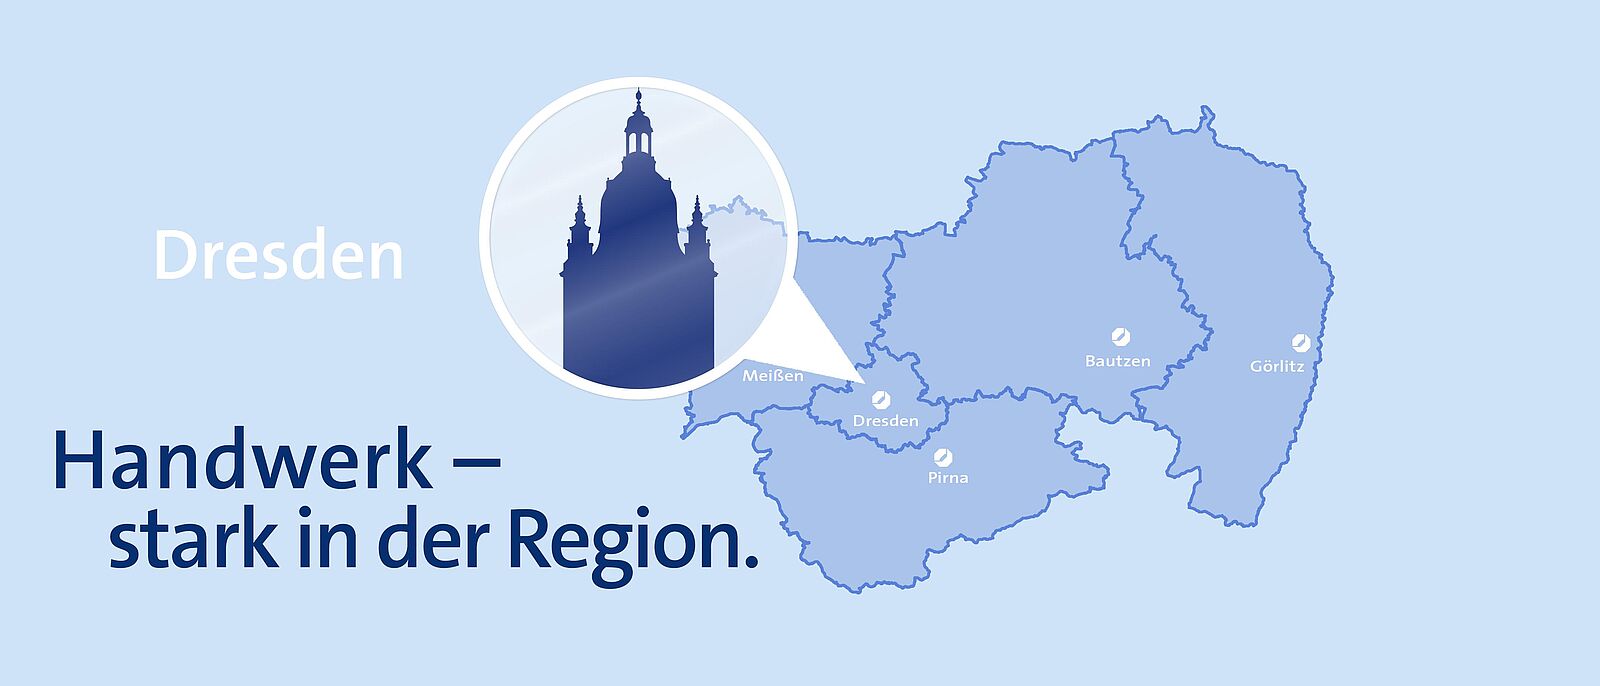 Hellblauer Hintergrund mit einer Karte der Landesdirektion Dresden, darauf ein runder weißer Marker mit der Sehenswürdigkeit von Dresden als dunkelblau hinterlegter Silhouette, daran ein weißer Pfeil der auf Dresden zeigt.